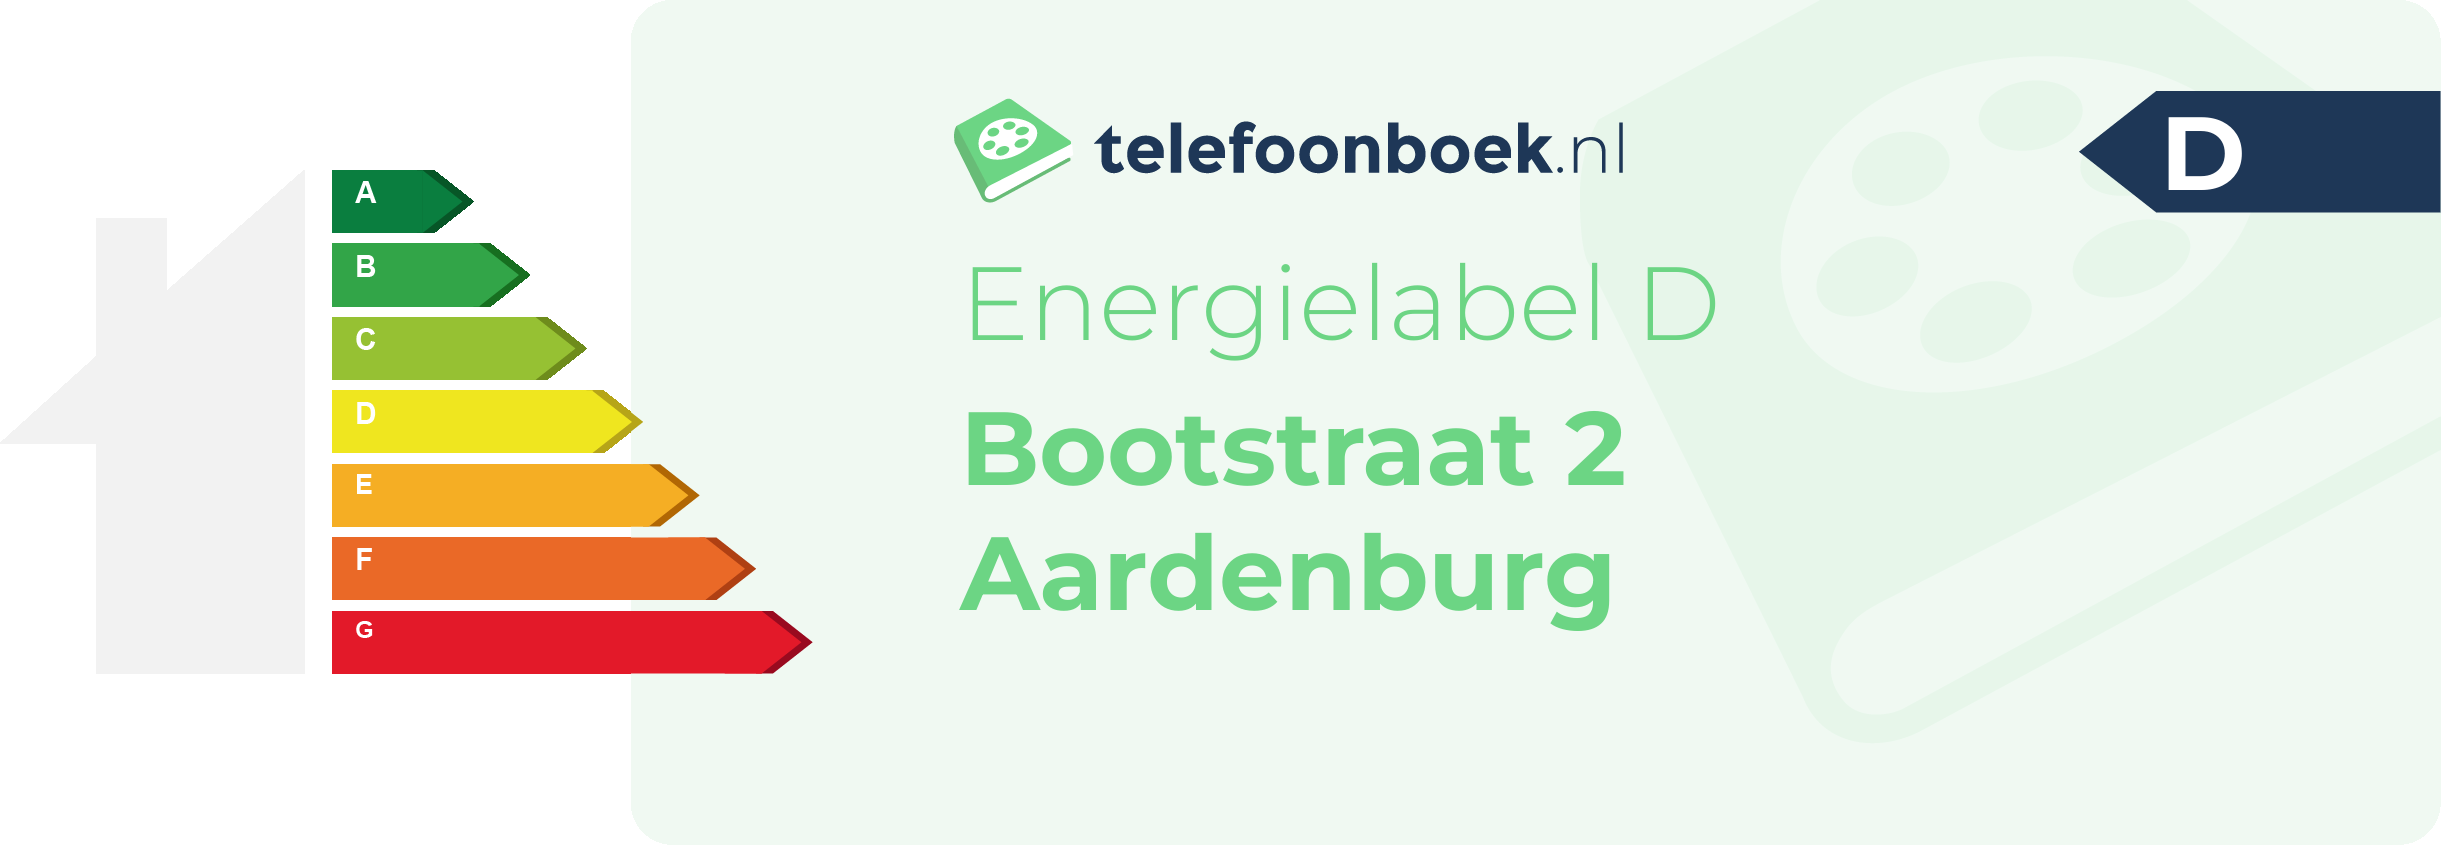 Energielabel Bootstraat 2 Aardenburg